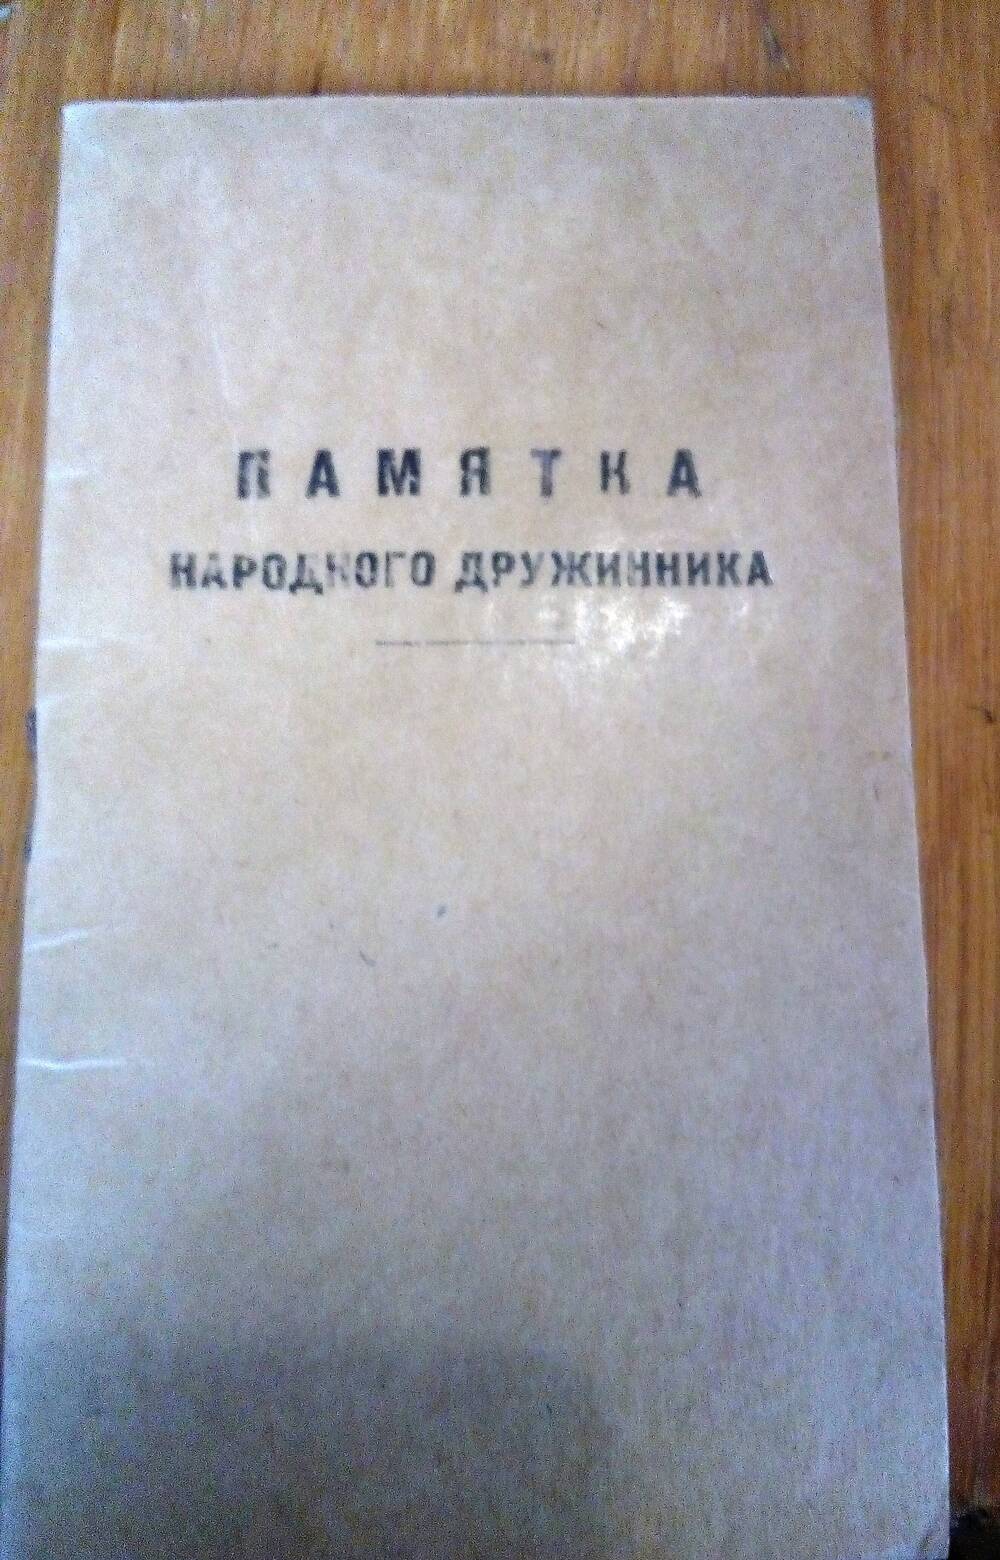 Памятка народного дружинника. г. Симферополь, 1974 г